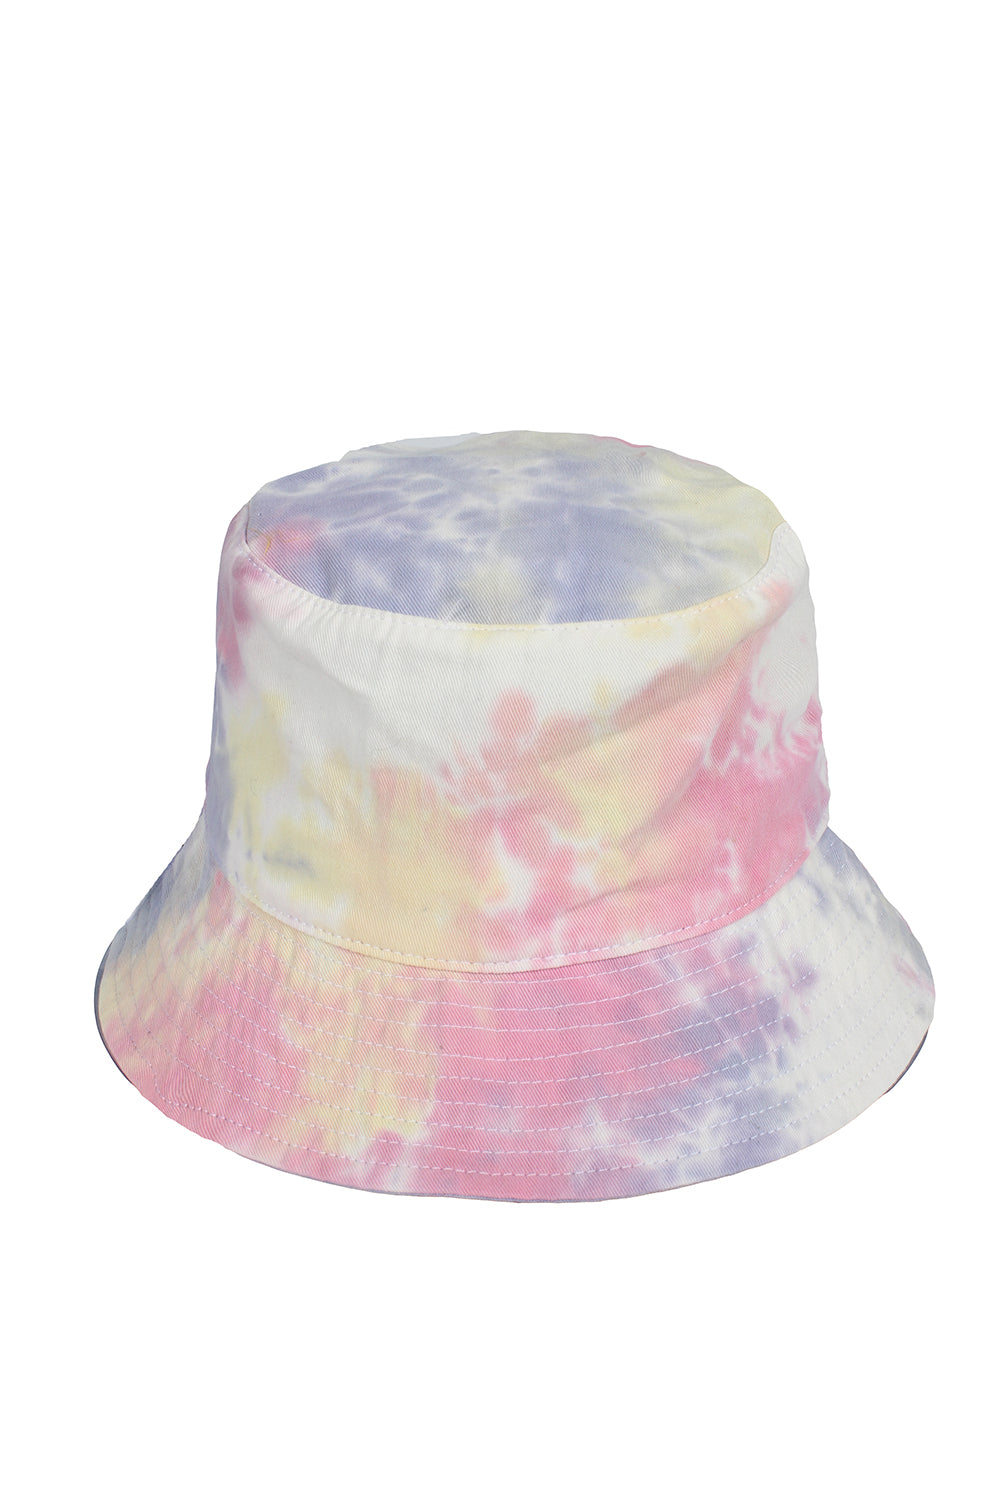 JCBU3864 - Tie dye bucket hats